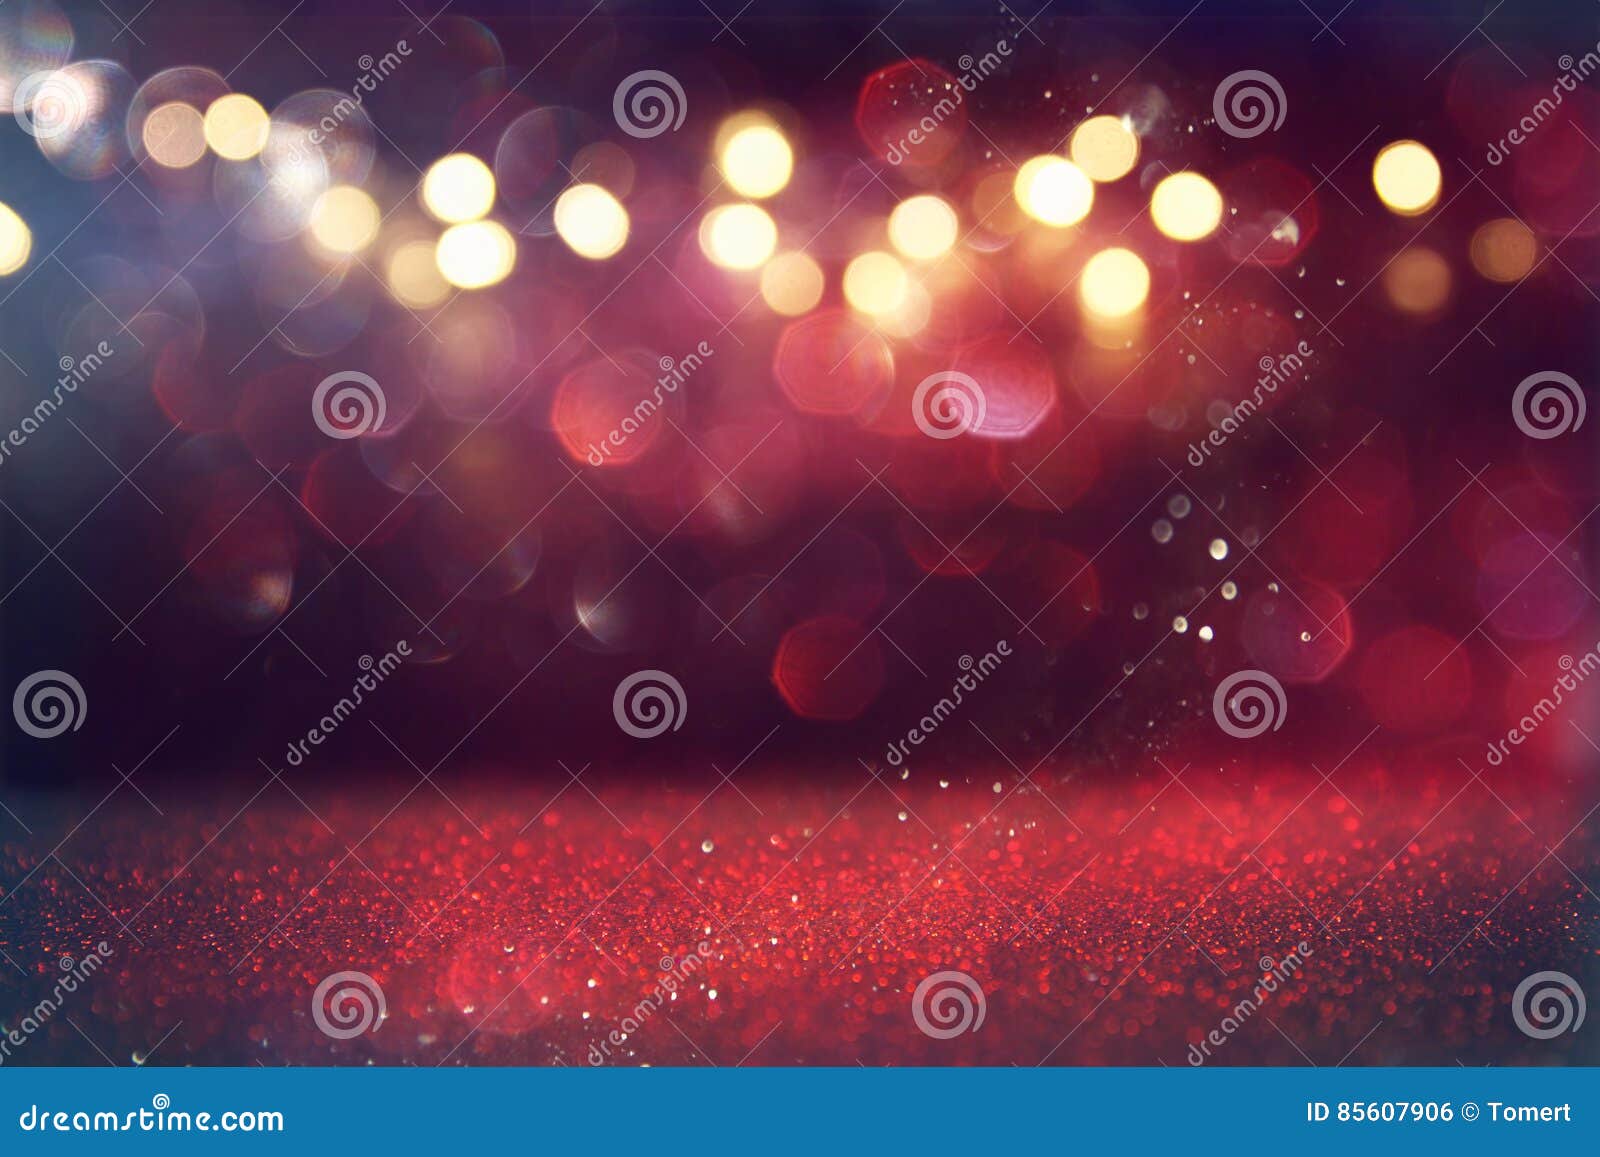 red glitter vintage lights background